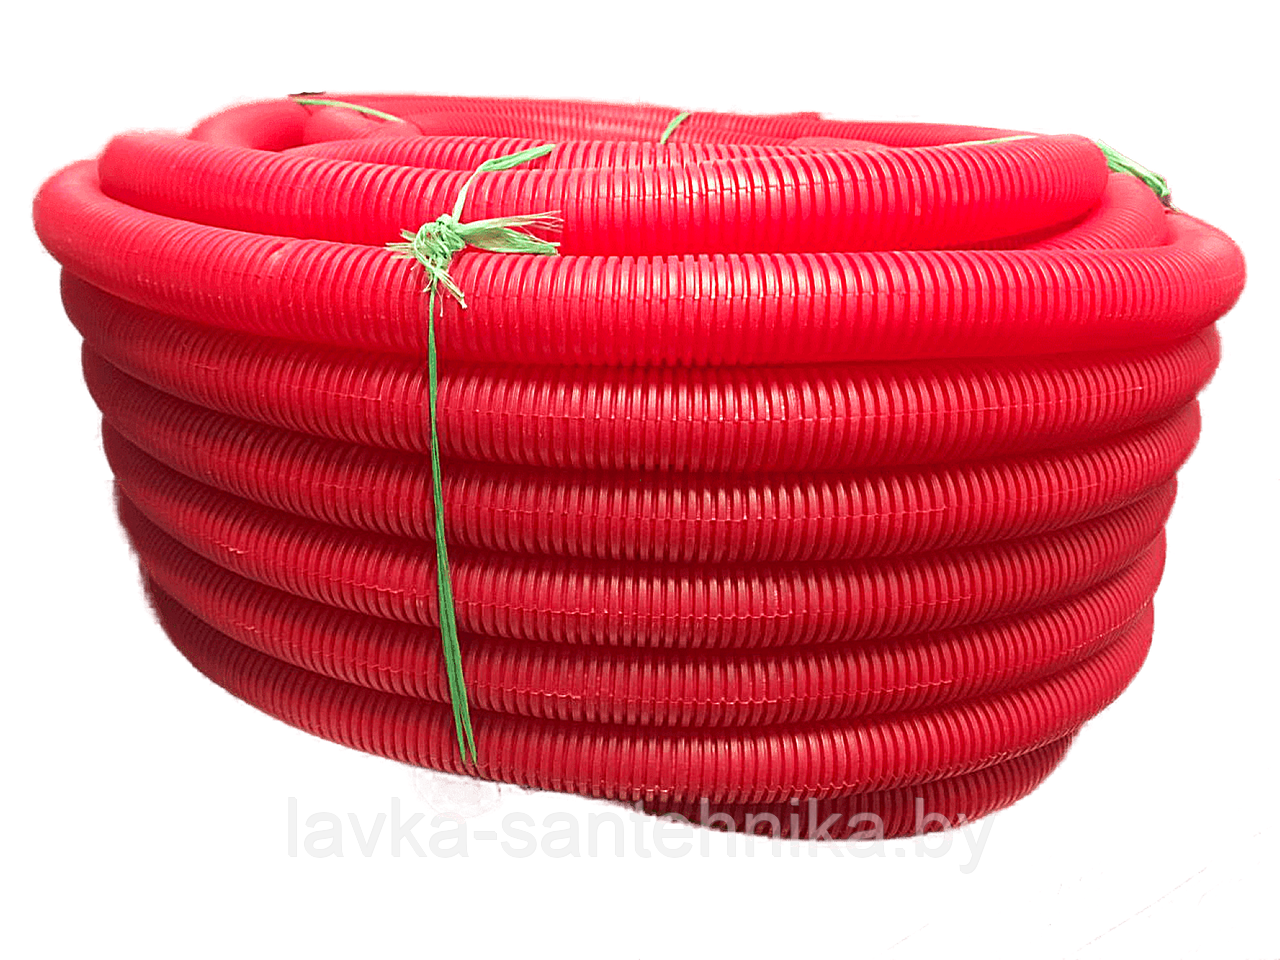 Труба (пешель) защитная гофрированная 29 мм (цвет: красный, длина бухты: 50 м)